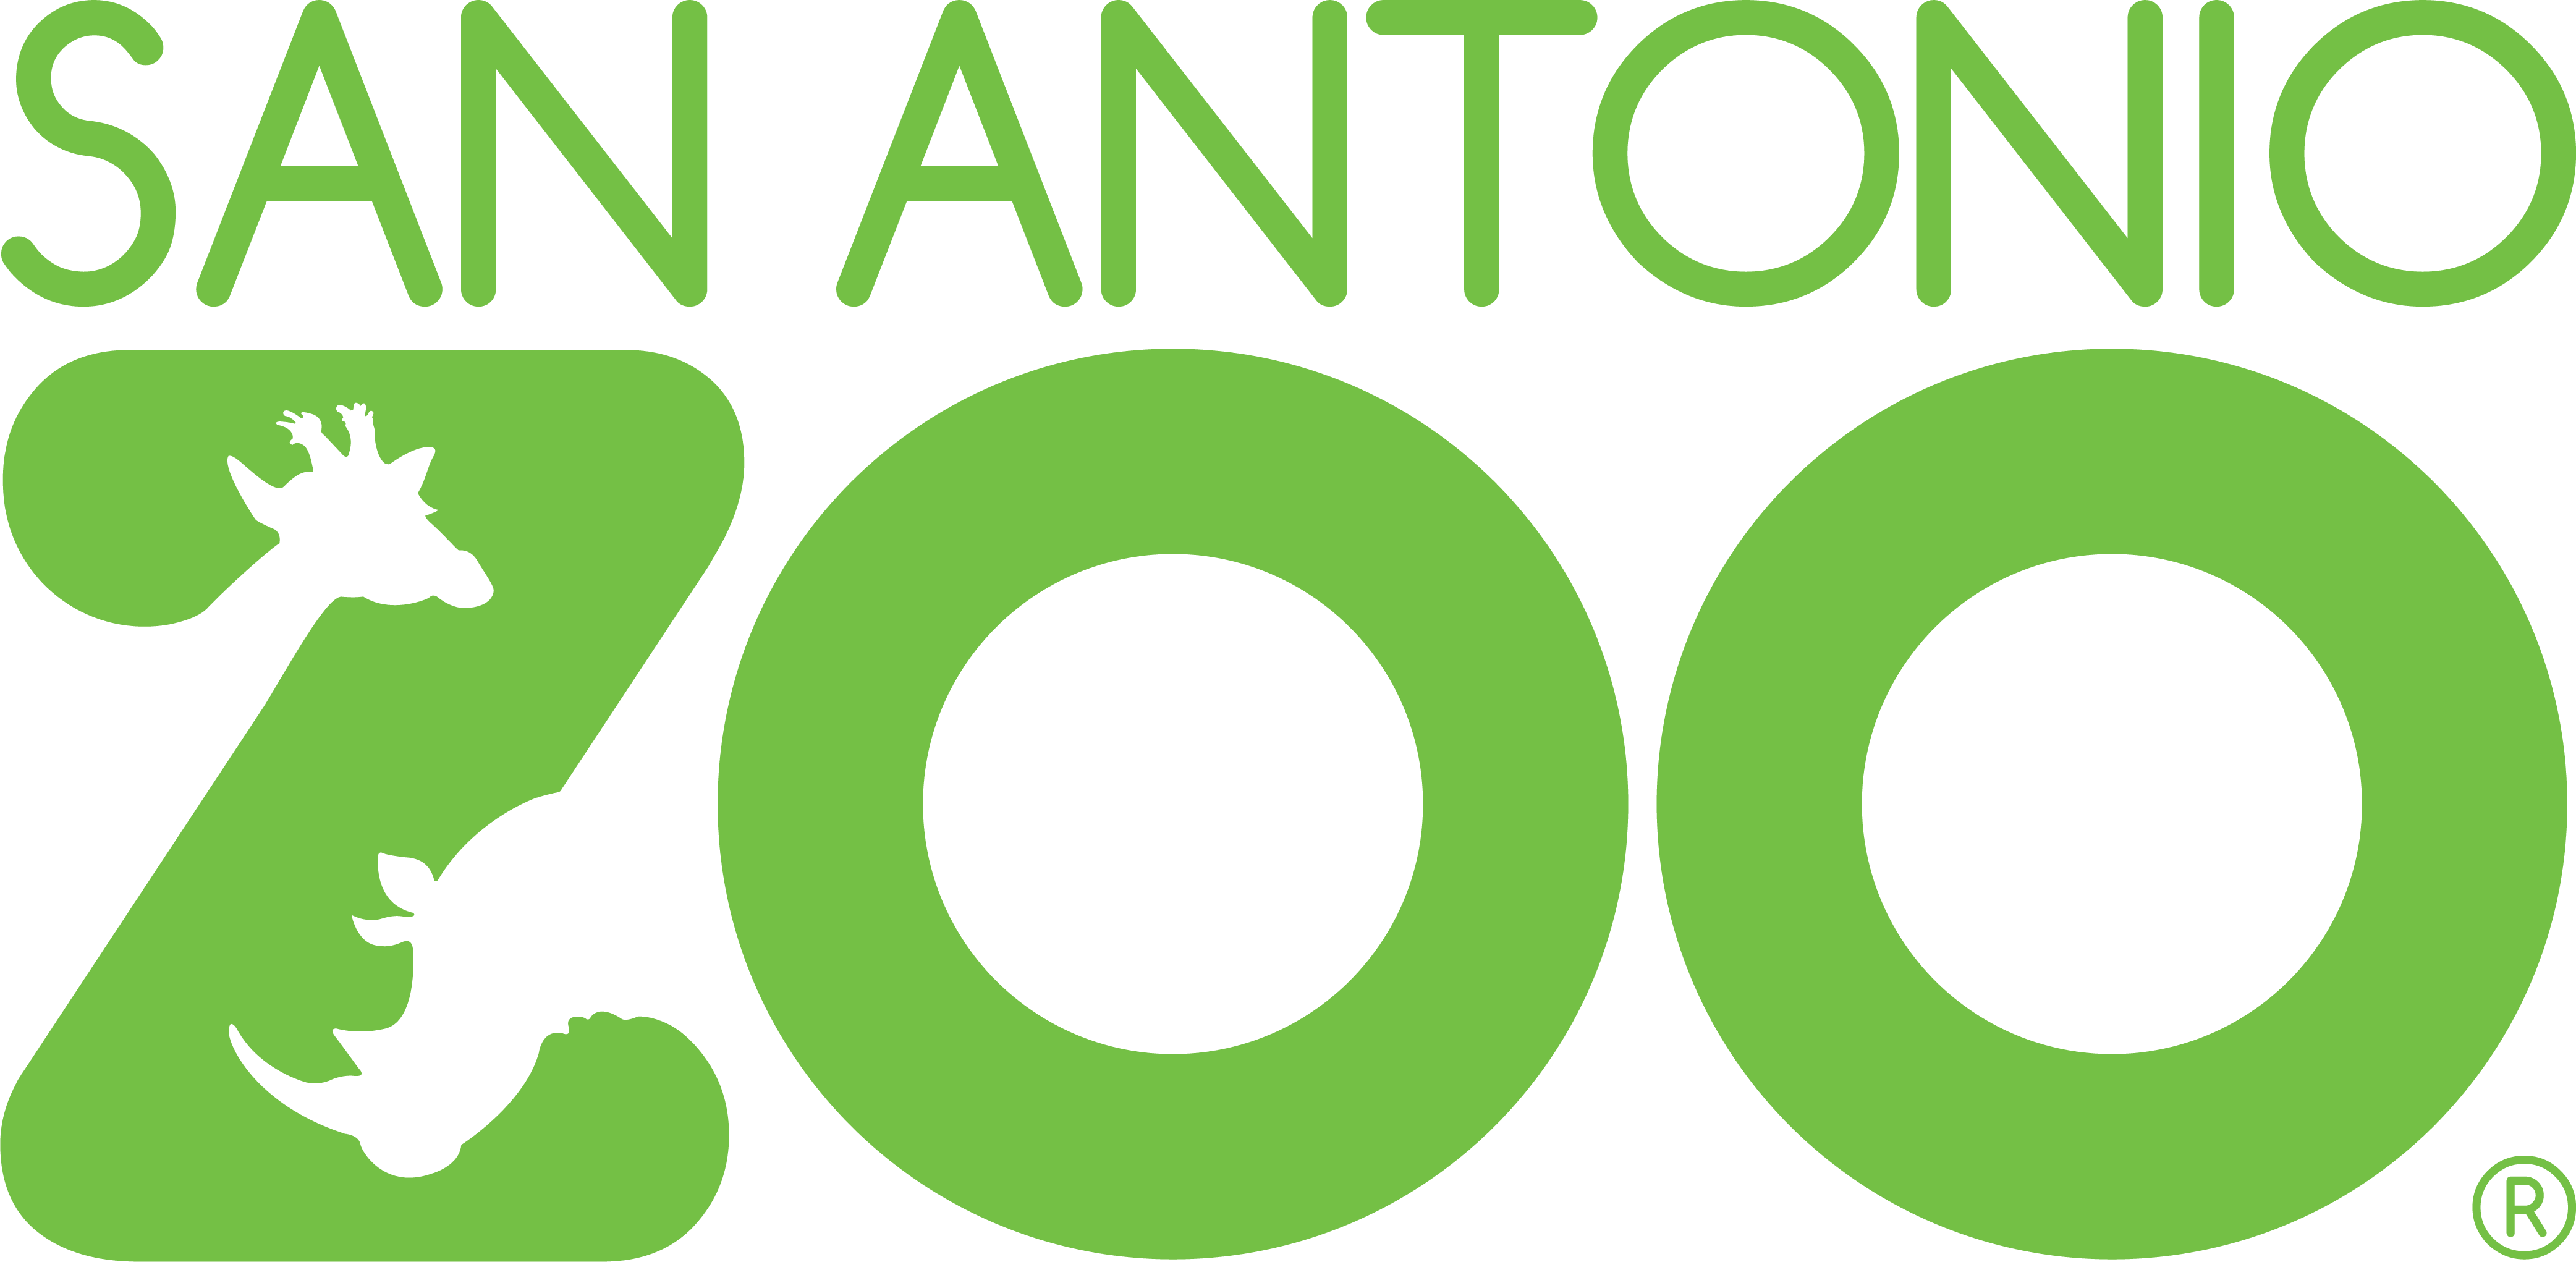 San Antonio Zoo (4168x2042)